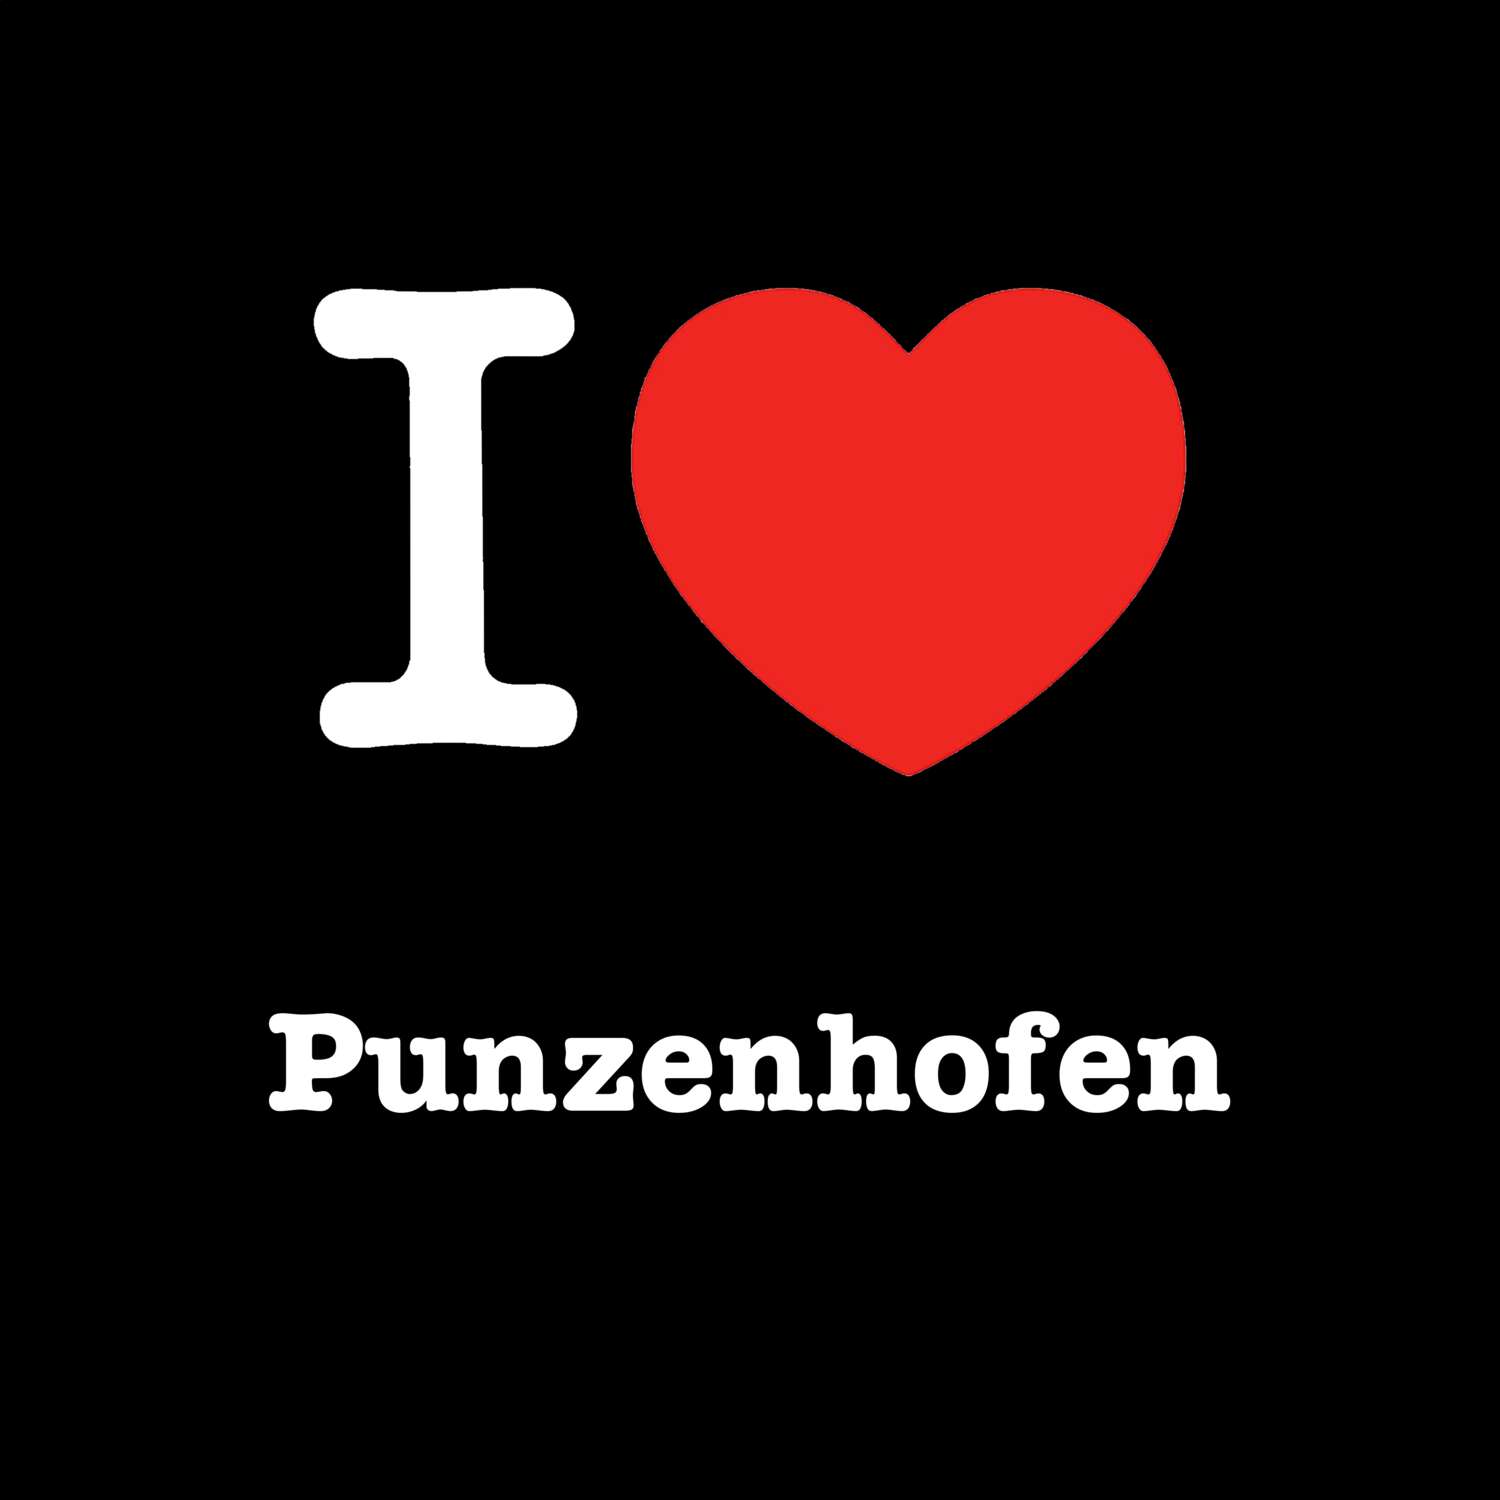 Punzenhofen T-Shirt »I love«